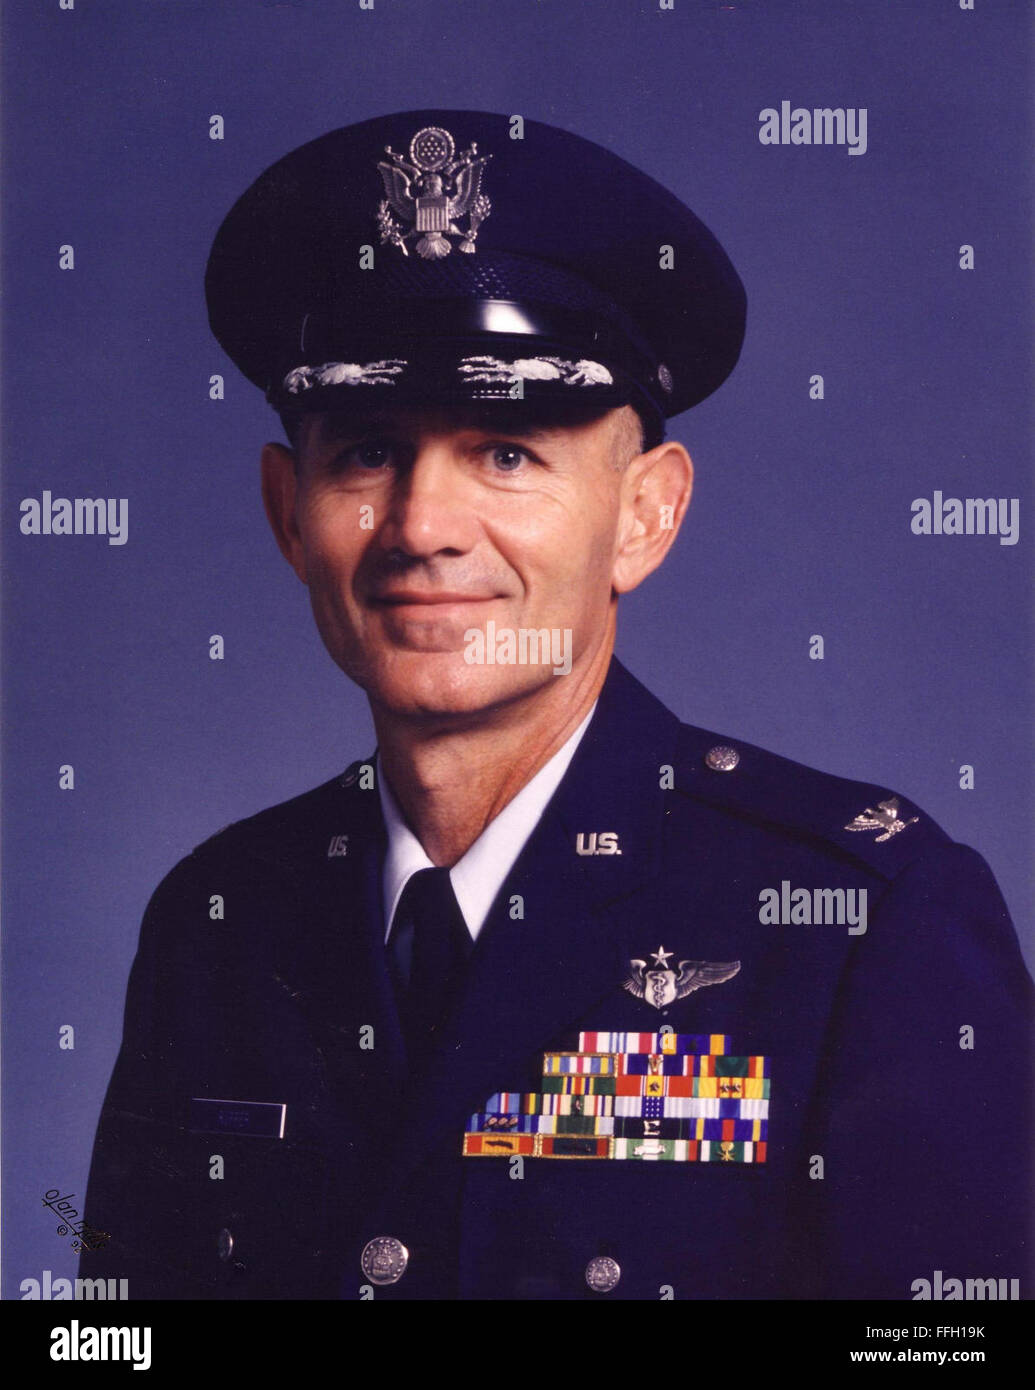 Après avoir servi dans le Corps des Marines et de la Marine, ancien colonel de l'Armée de l'air (DR) James Ruffer rejoint l'Air Force et devient médecin. Banque D'Images